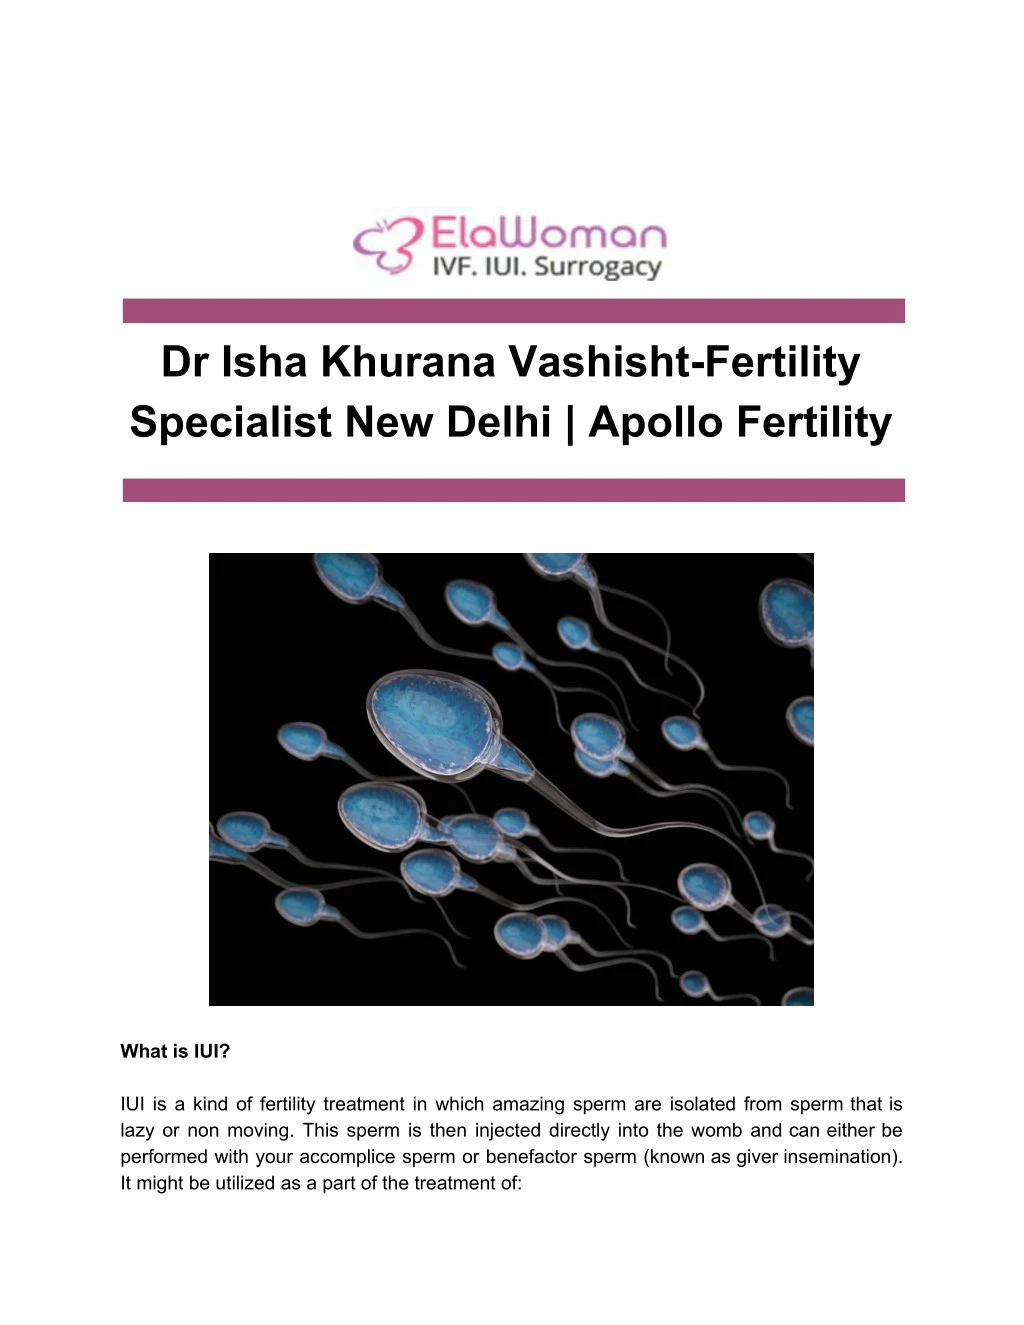 dr isha khurana vashisht fertility specialist